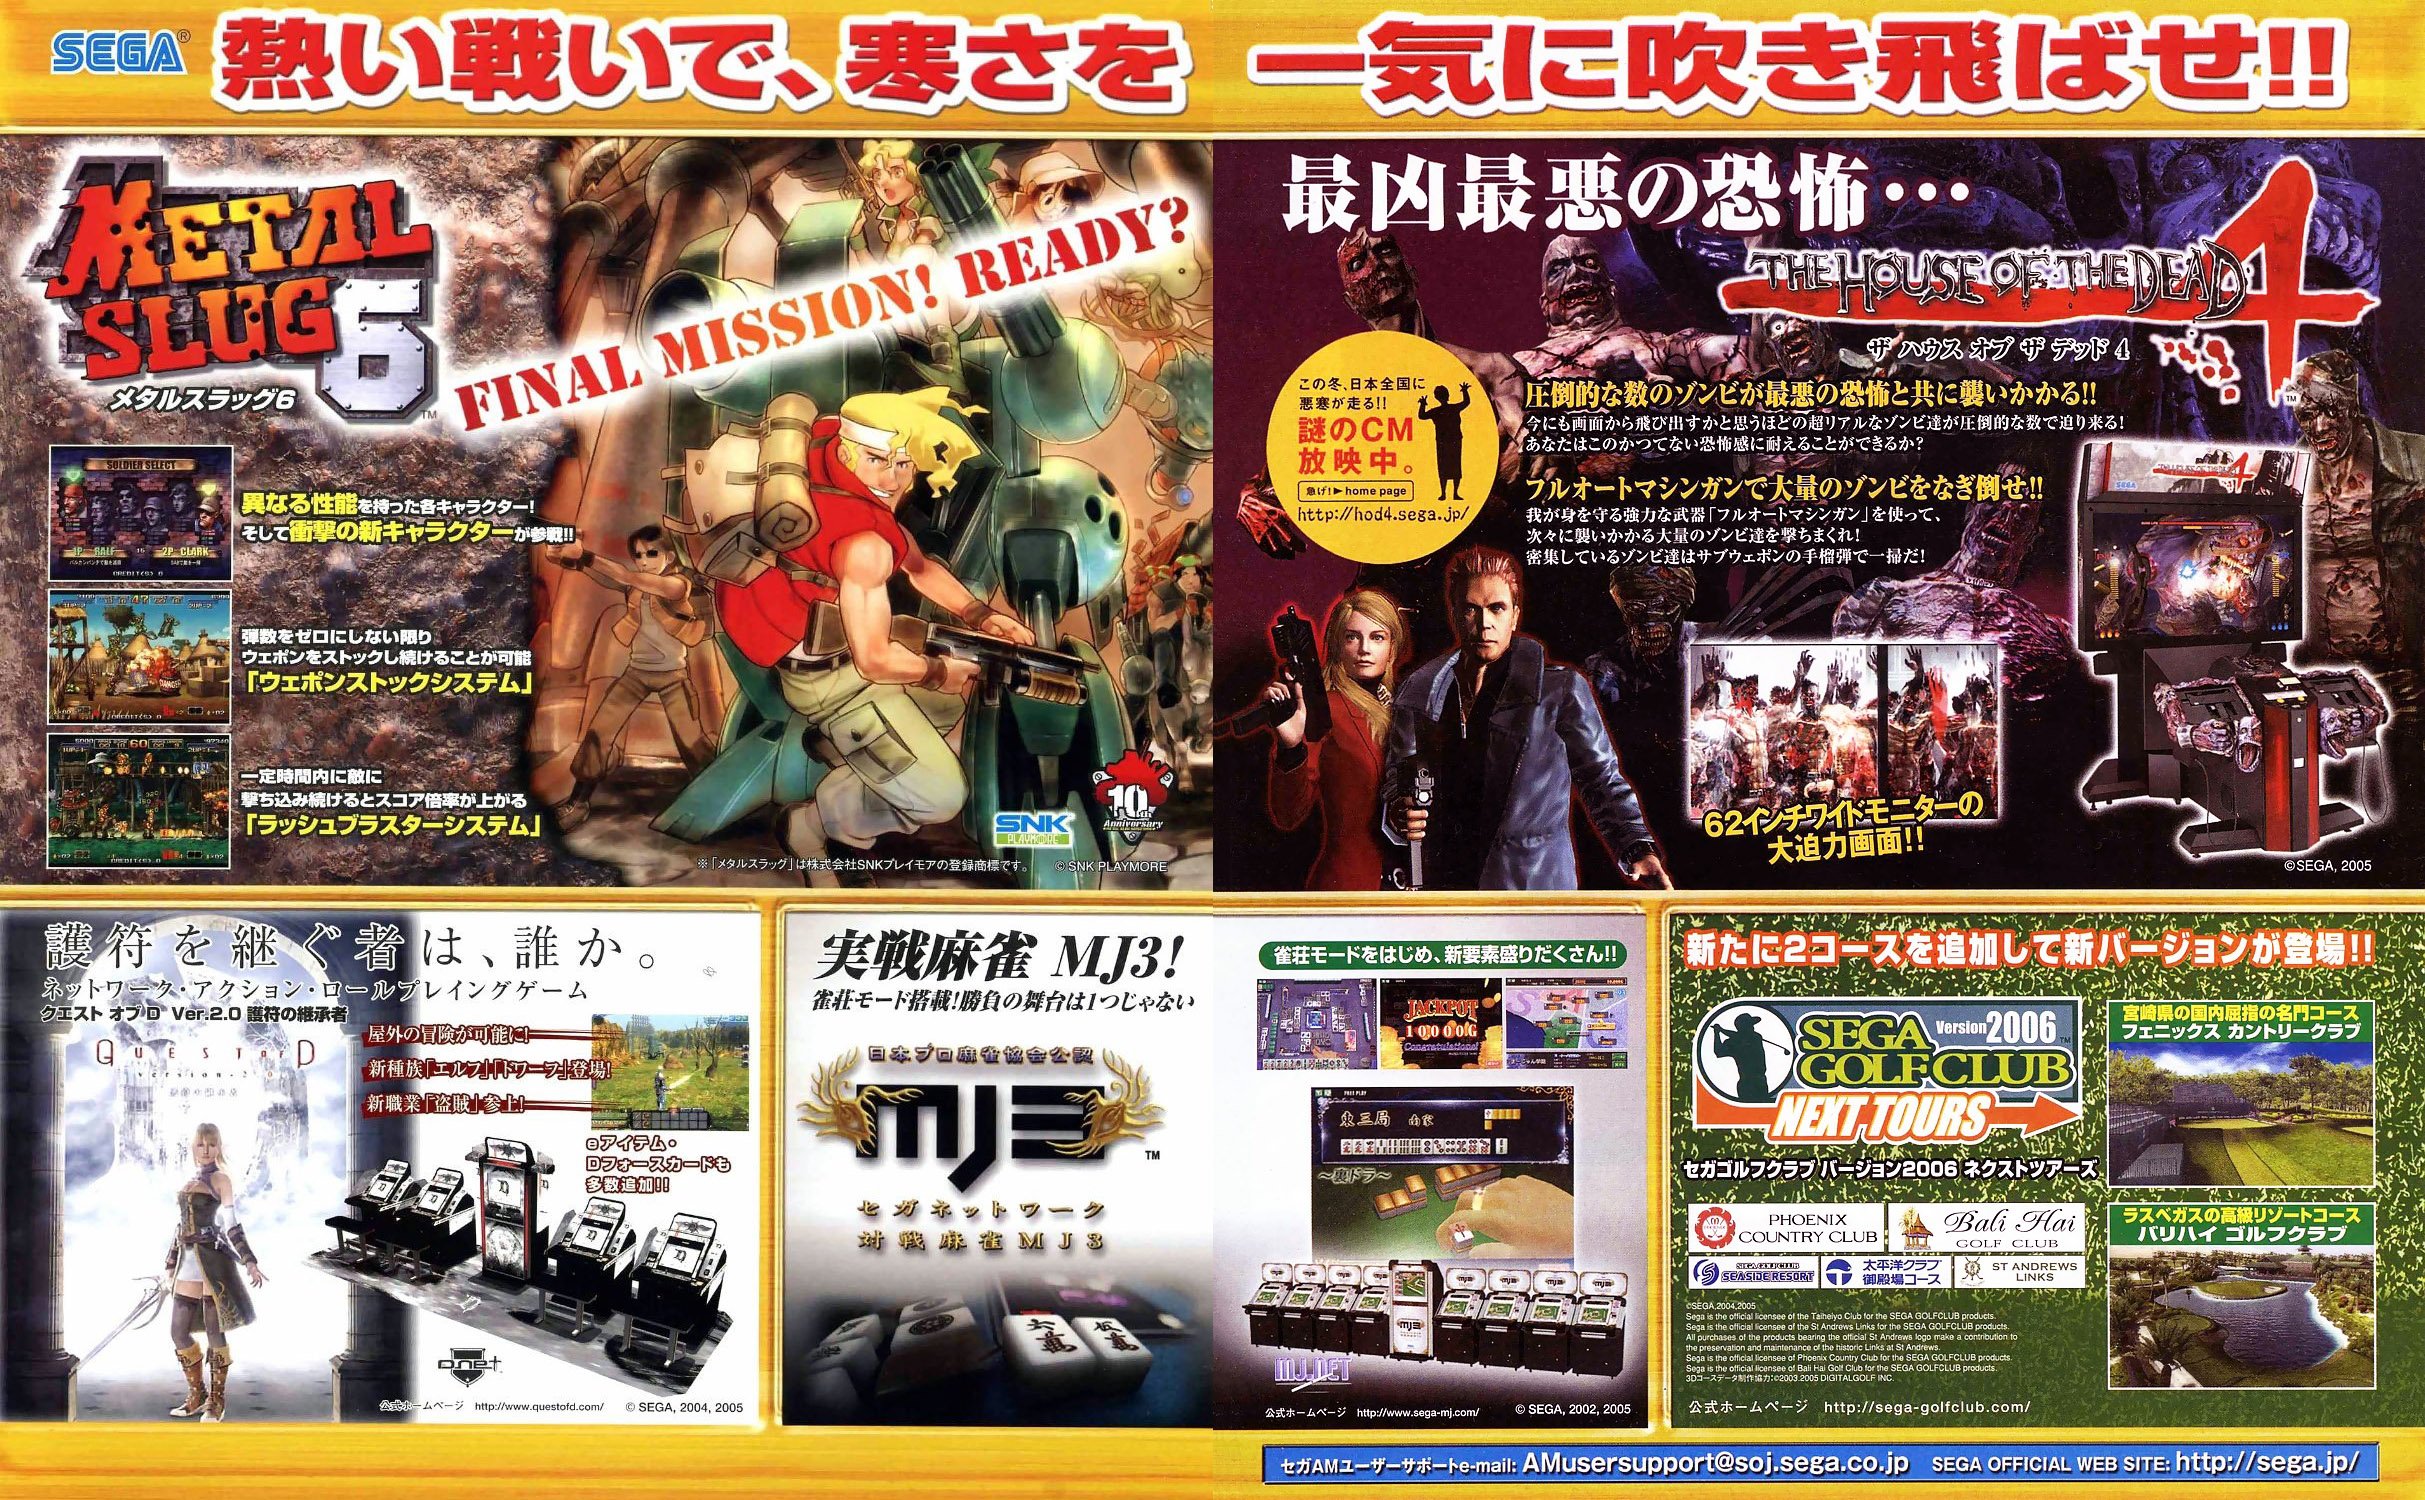 Metal Slug 6, House of the Dead 4, Quest of D, MJ3, Sega Golf Club Version 2006 Next Tours (Japan)